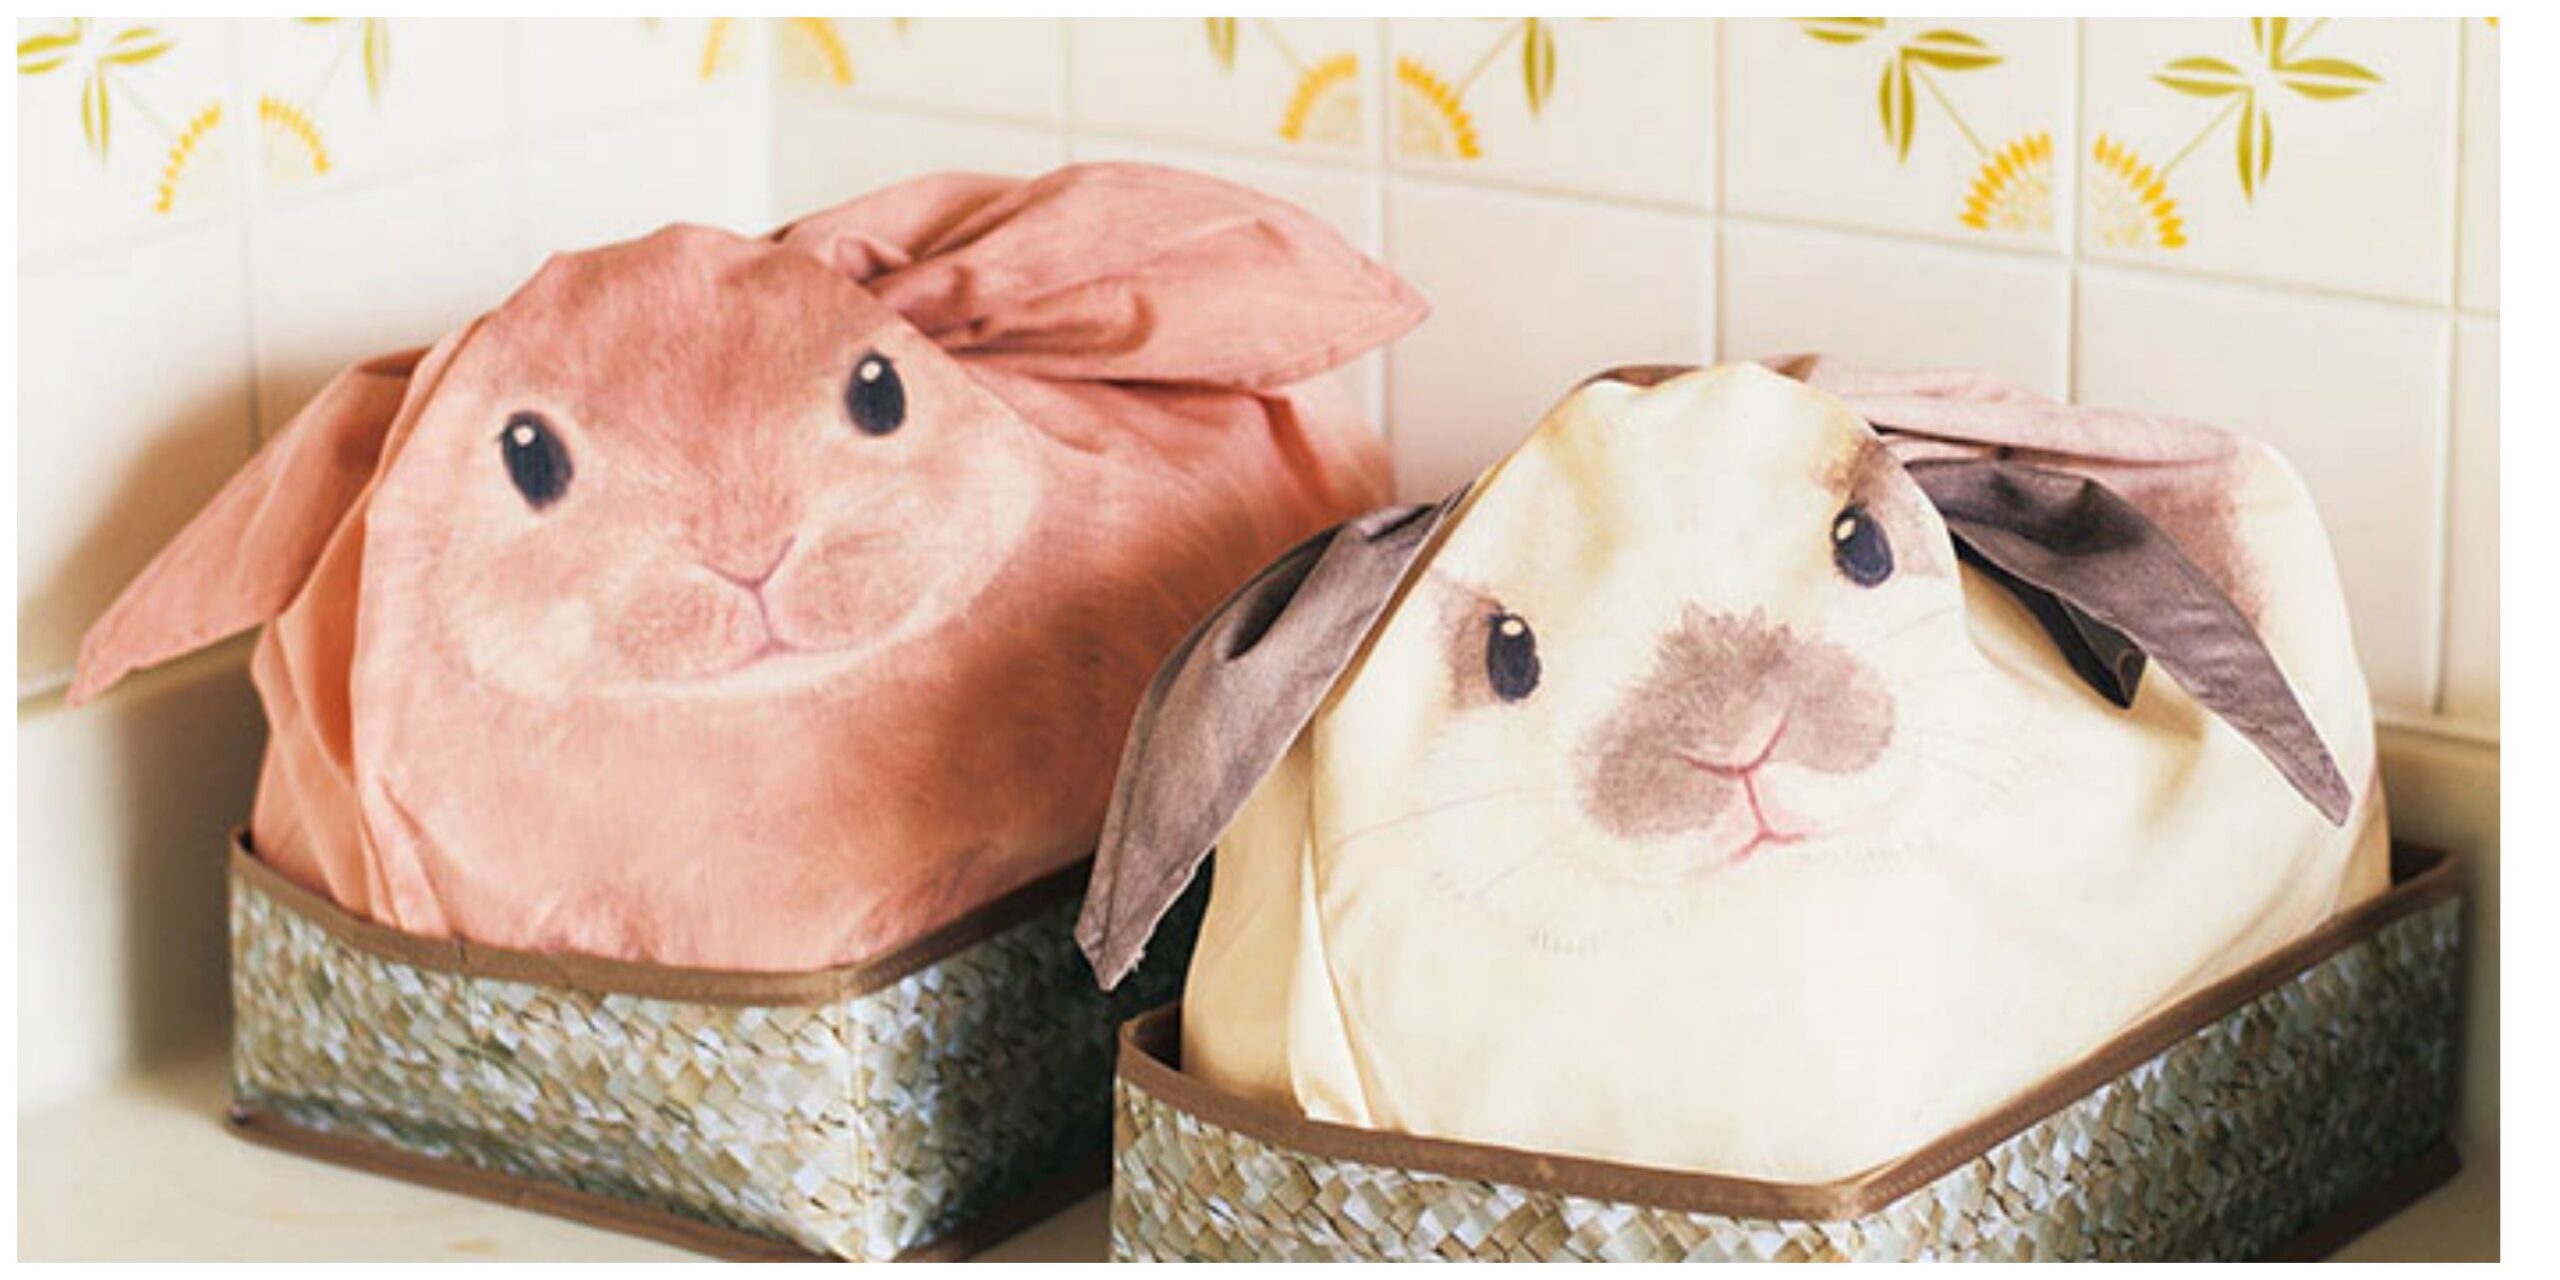 Comprereste mai una borsa – coniglio?